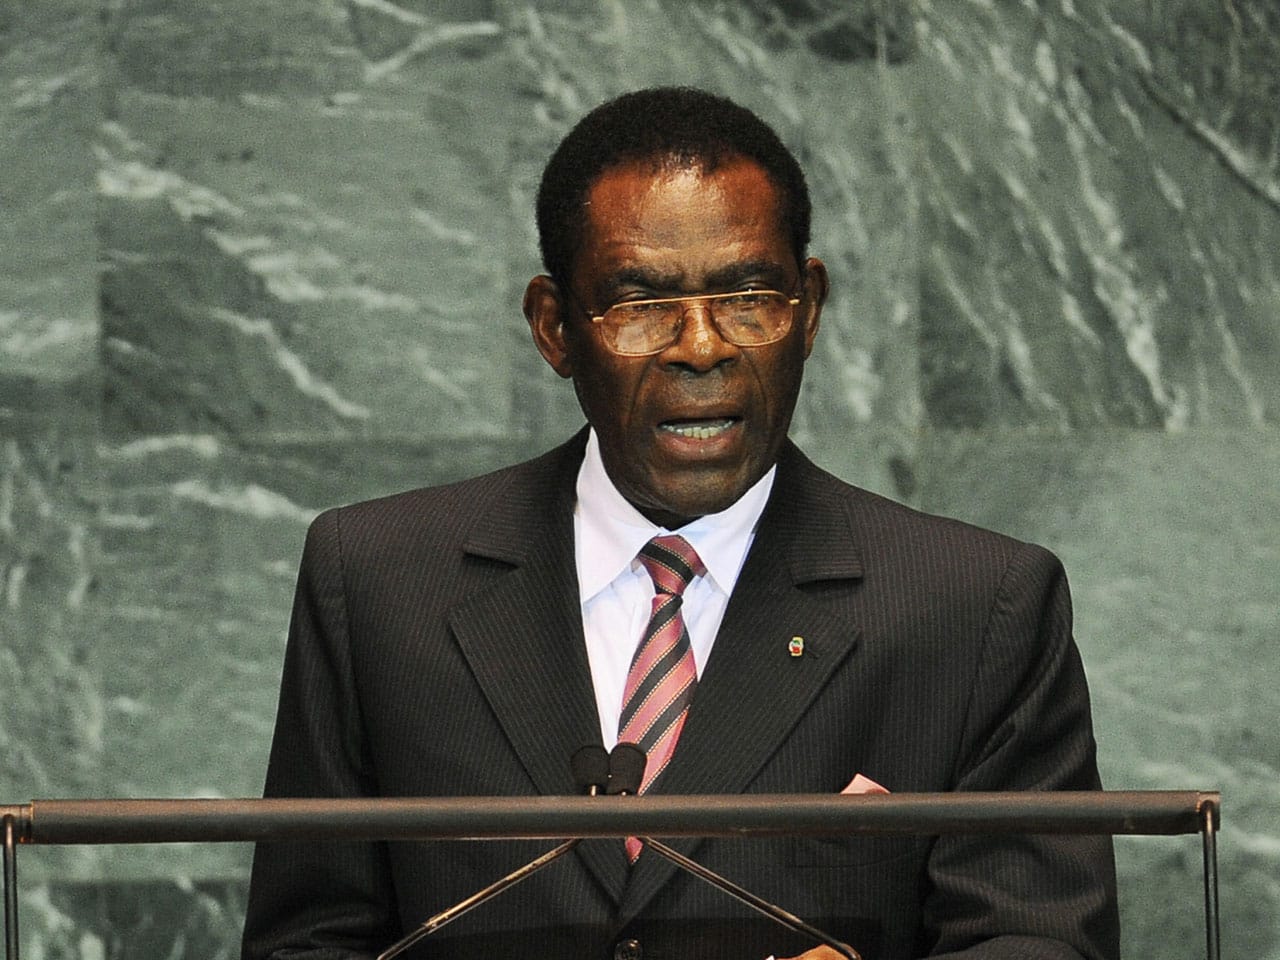 Présidentielle en Guinée équatoriale : le score de Obiang Nguema Mbasogo revu à 94,9 %